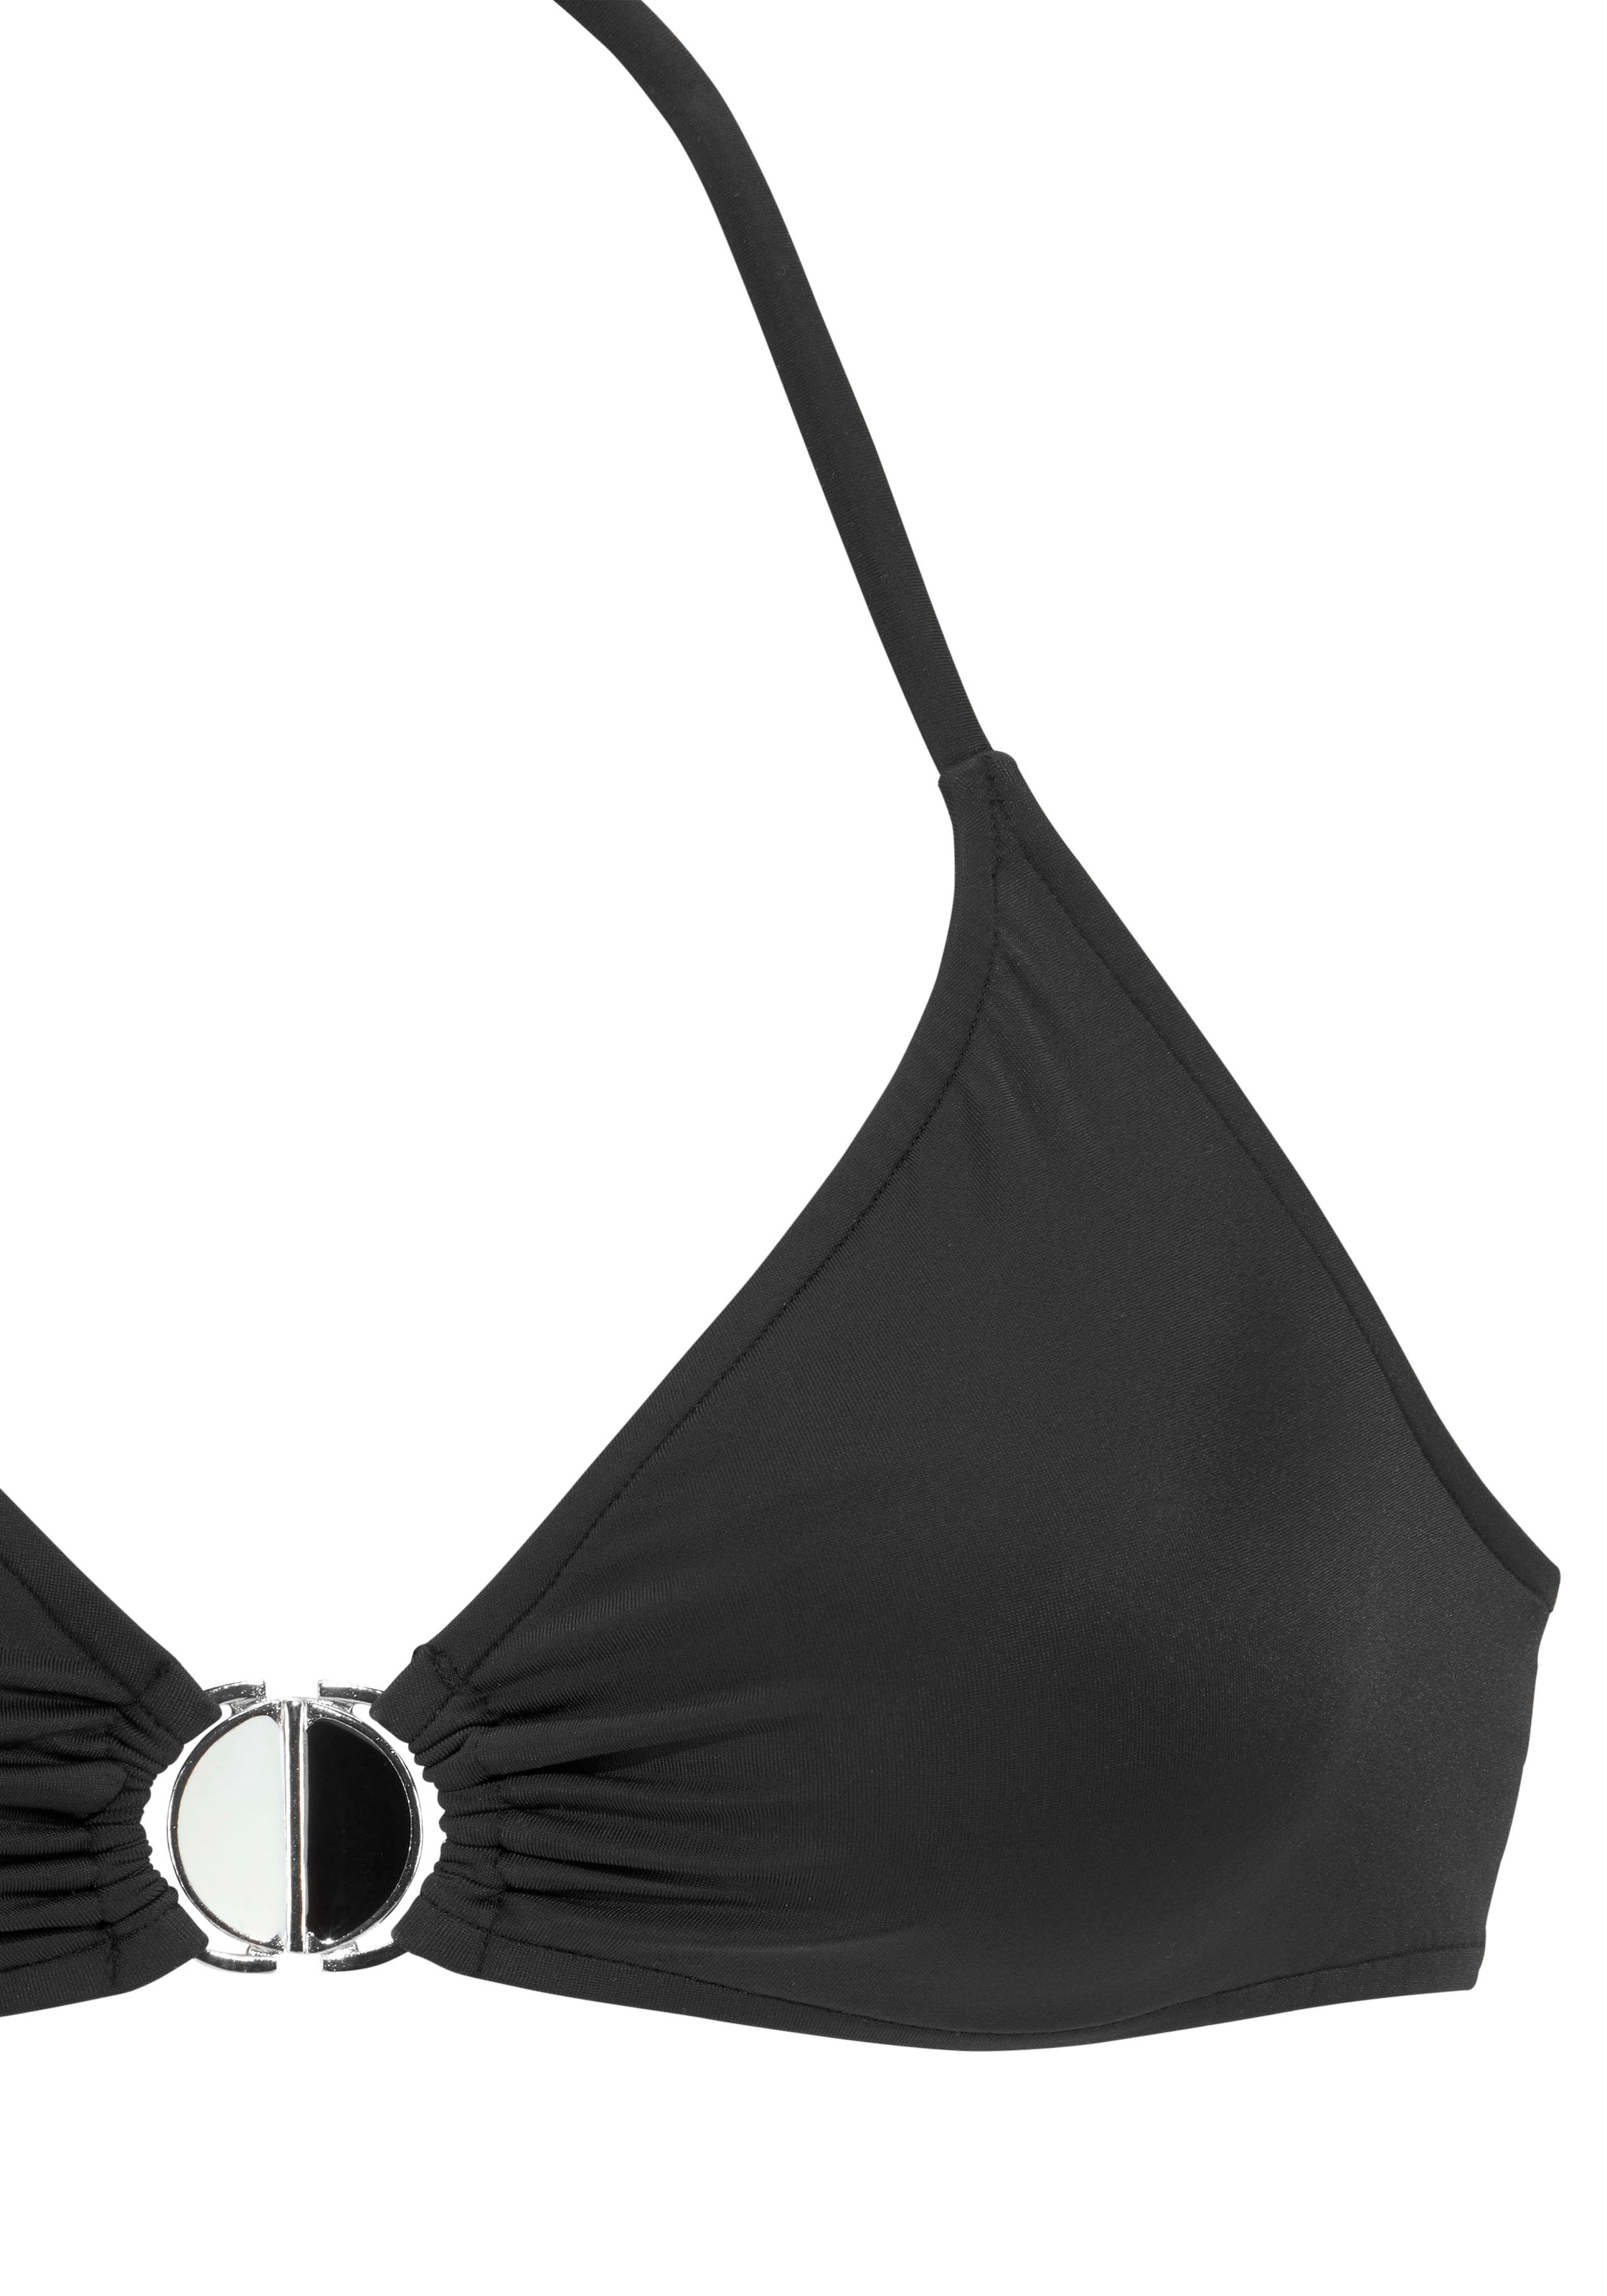 JETTE Triangel-Bikini, mit Zier-Accessoires